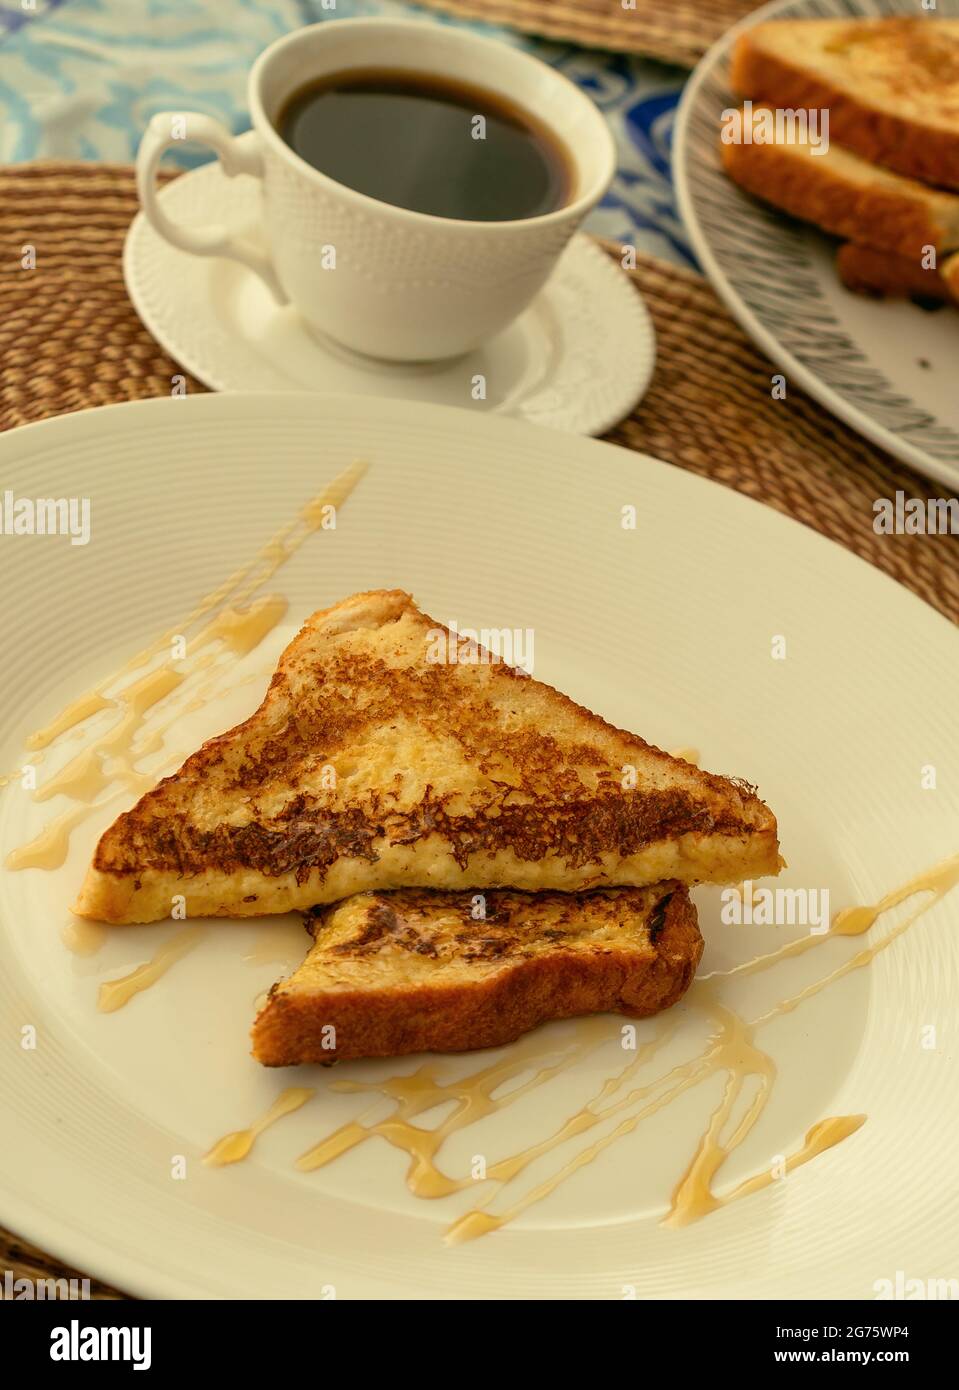 Zwei französische Toasts mit Honig auf einem weißen Teller zum Frühstück oder Brunch, im Hintergrund eine Tasse schwarzen Kaffee und ein Stapel French Toast. Stockfoto